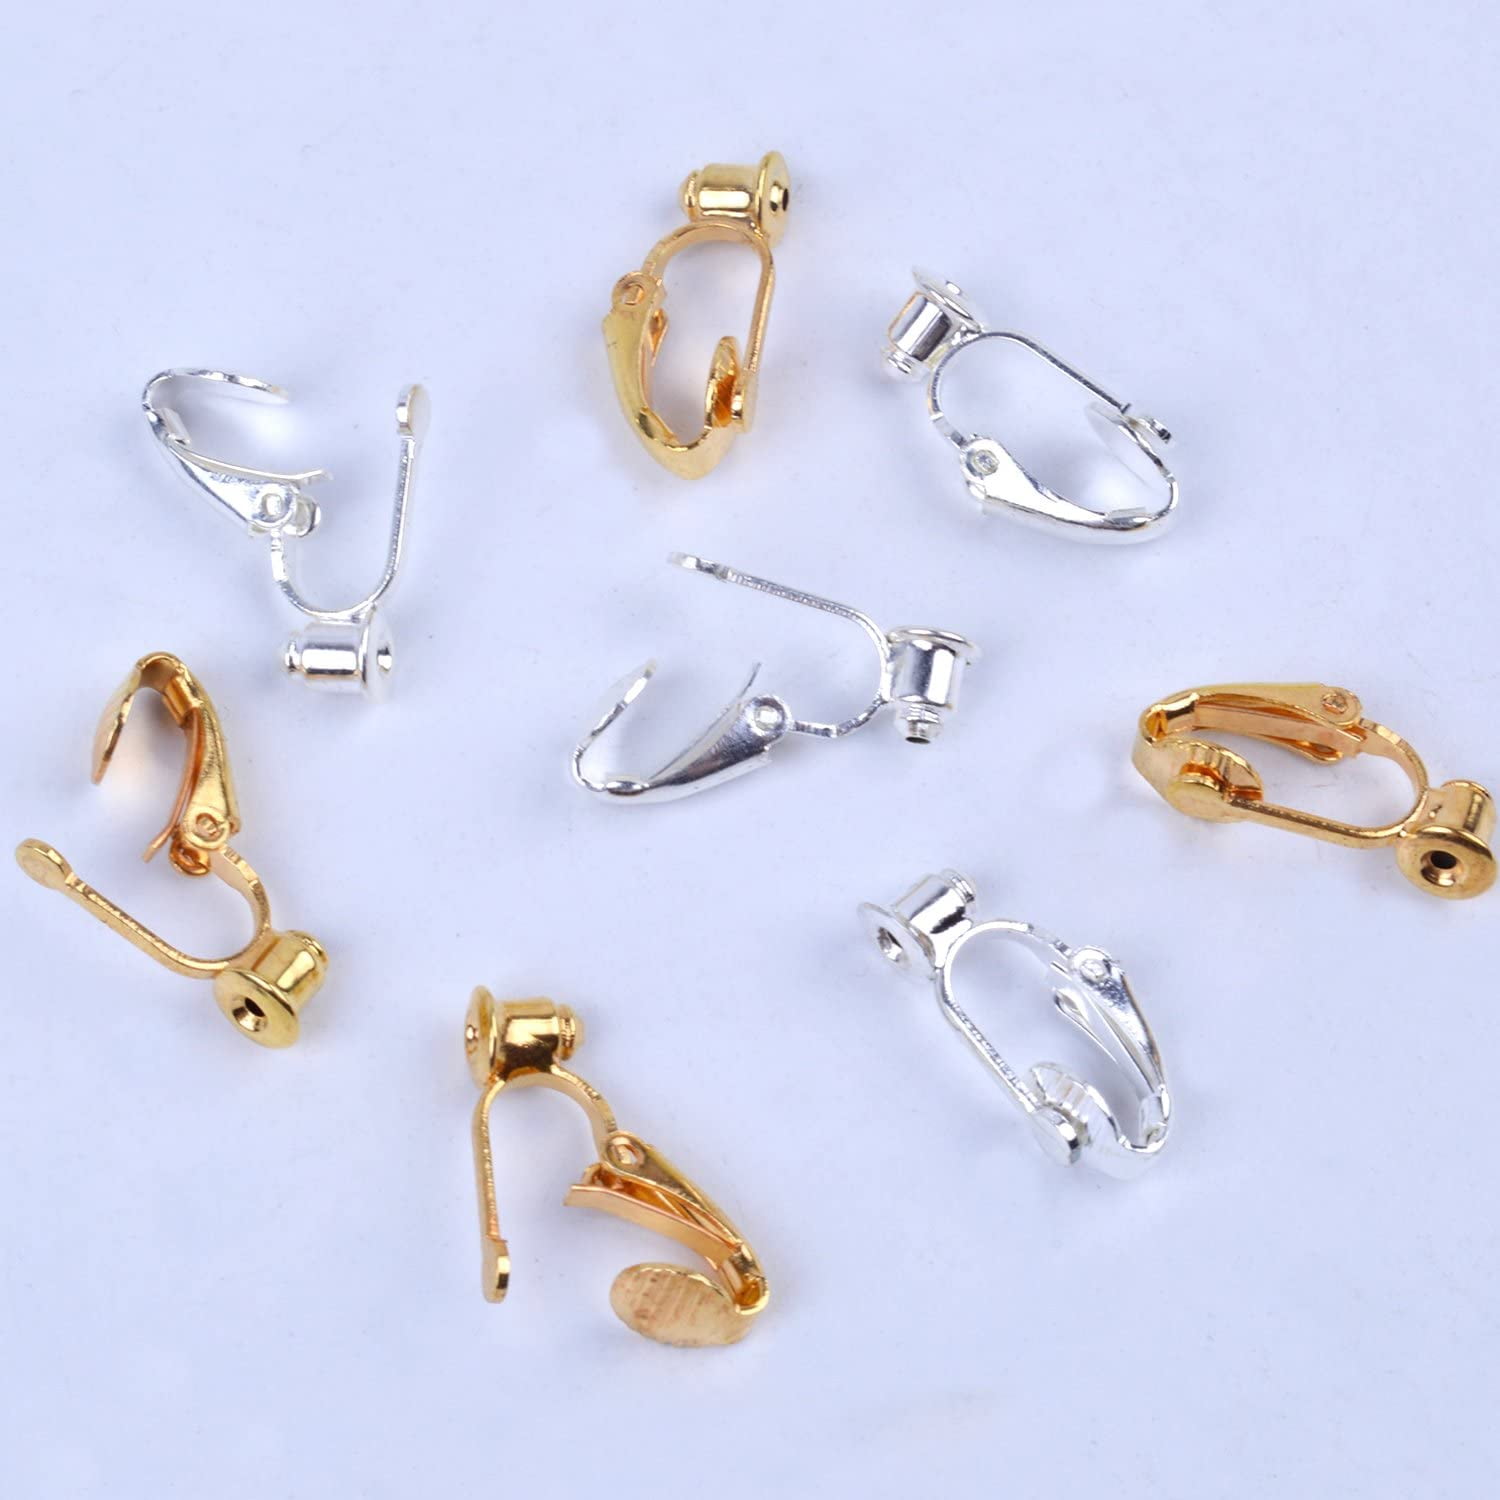 EXCEART 60 PCS Ear Clips Earrings Pierced Earrings Pierced Earring Backs  for Posts Earrings Clip Converter Earring converters Clip On Earring  Findings